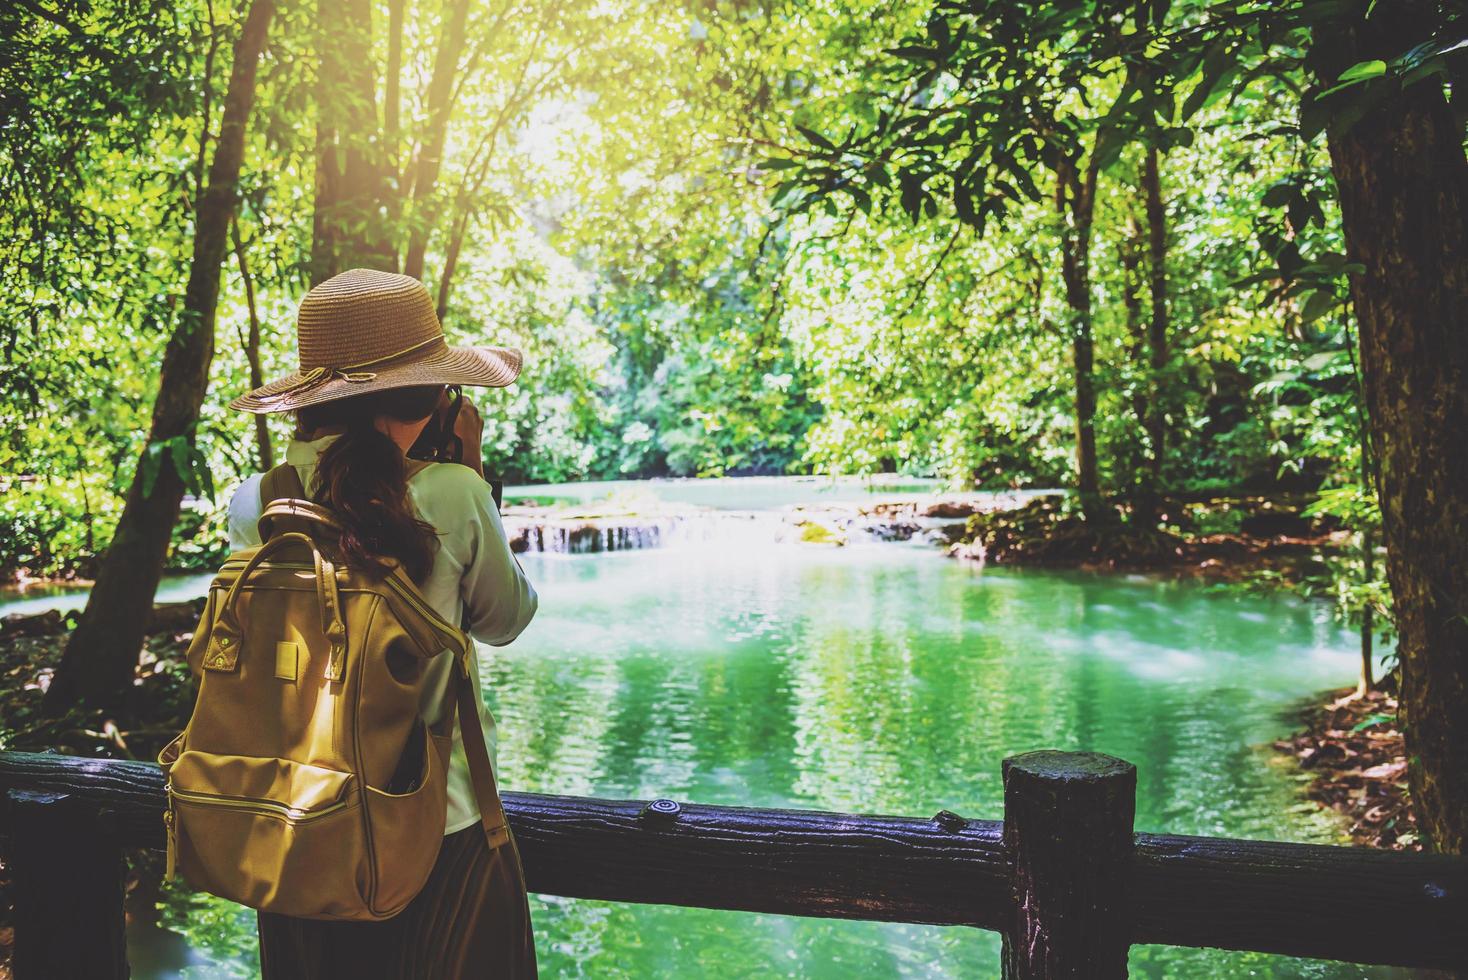 la fille voyage prend une photo du parc national de la cascade than bok thoni. lac, forêt de mangrove. nature de voyage. voyage se détendre. voyage en thaïlande, sac à dos, style, forêt, été.